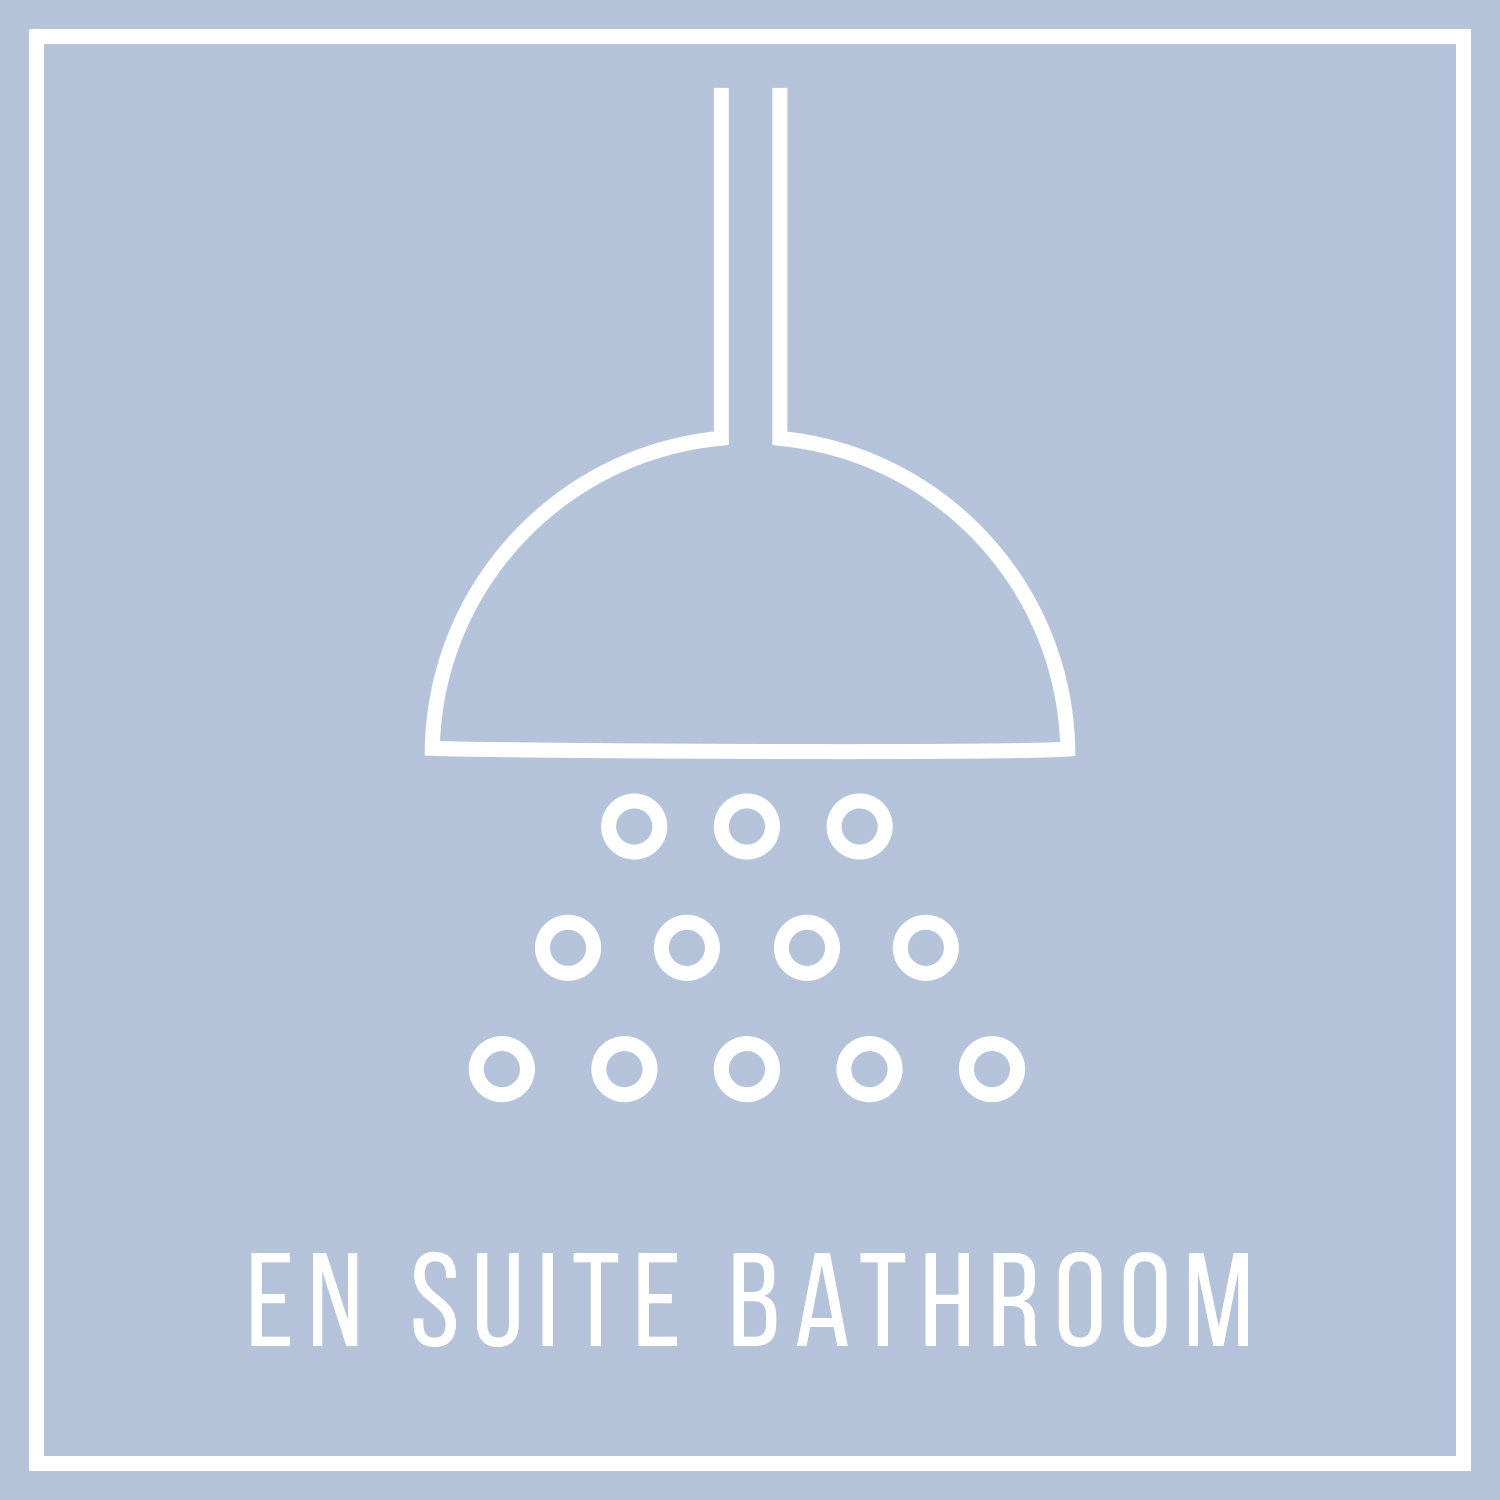 aya-kapadokya-room-features-colonnade-suite-square-en-suite-bathroom